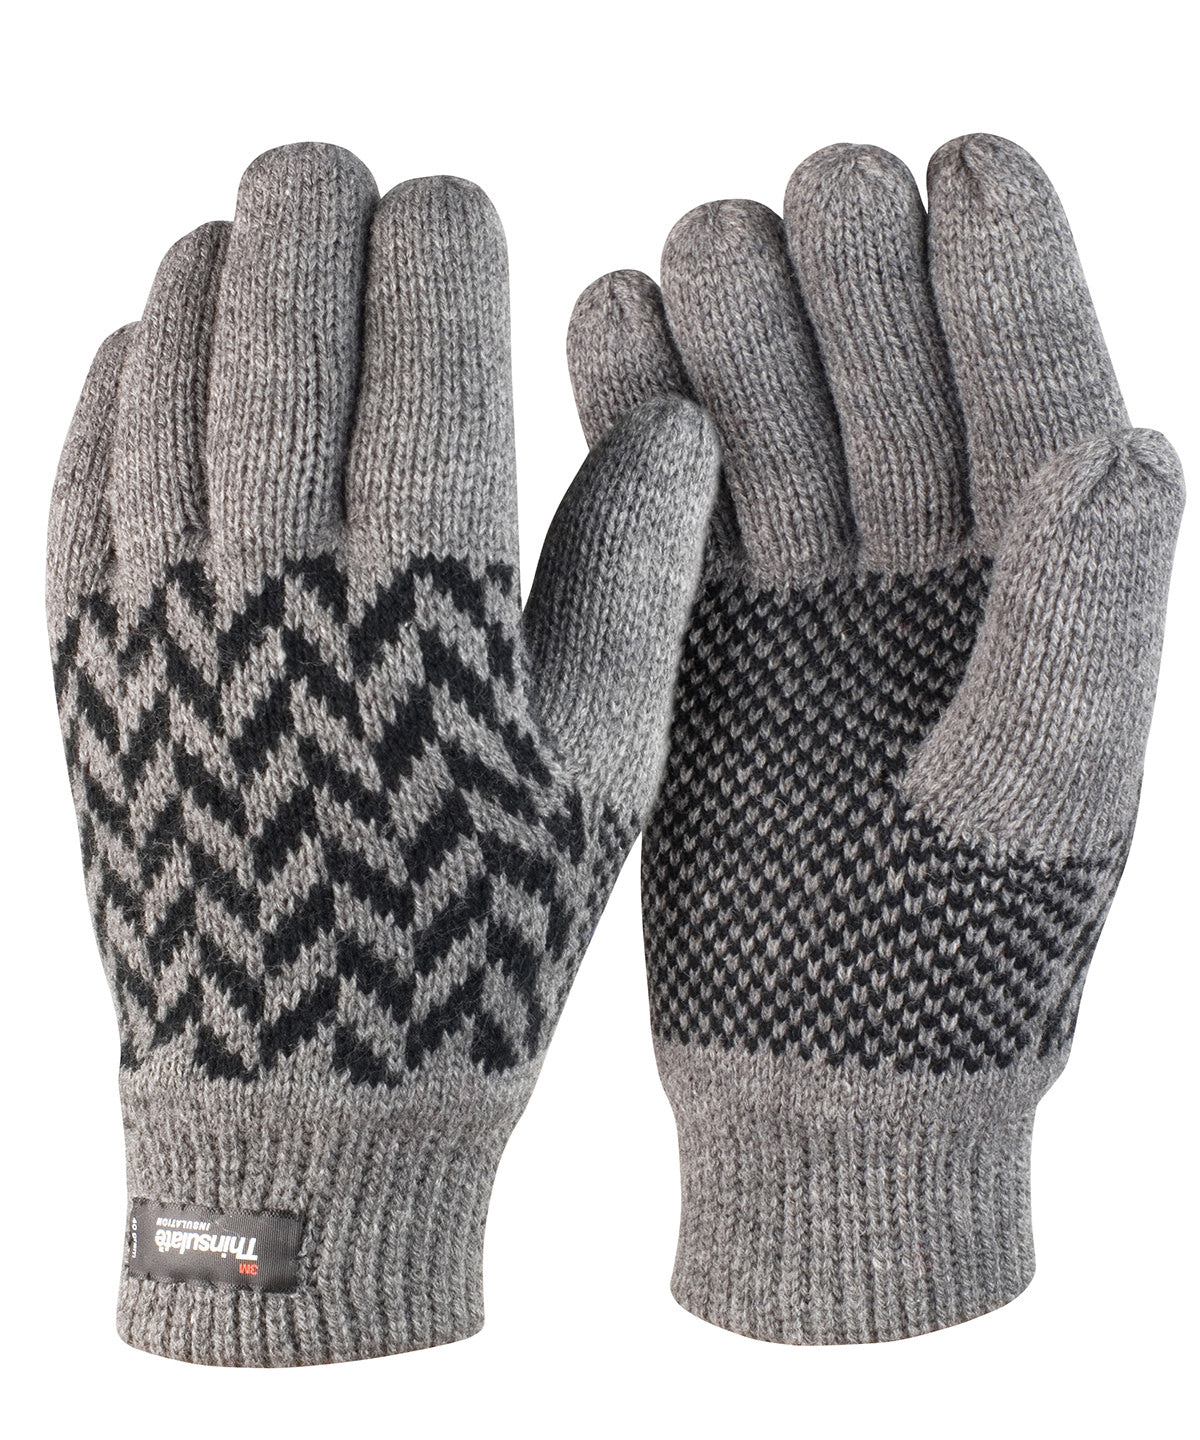 Pattern Thinsulateâ„¢ glove